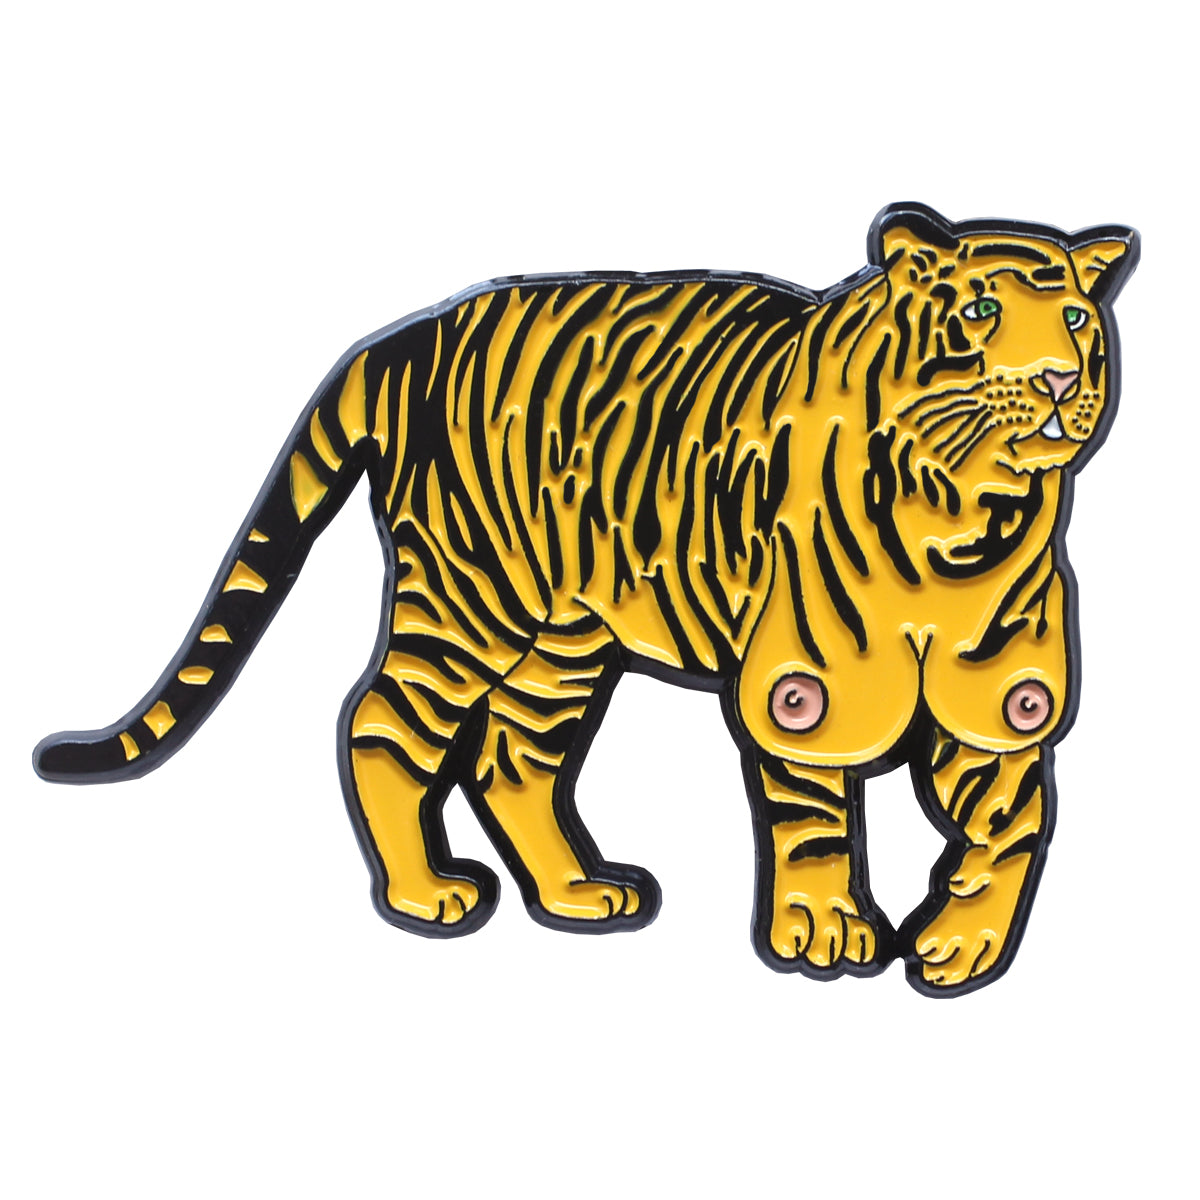 Pin on Tigers!